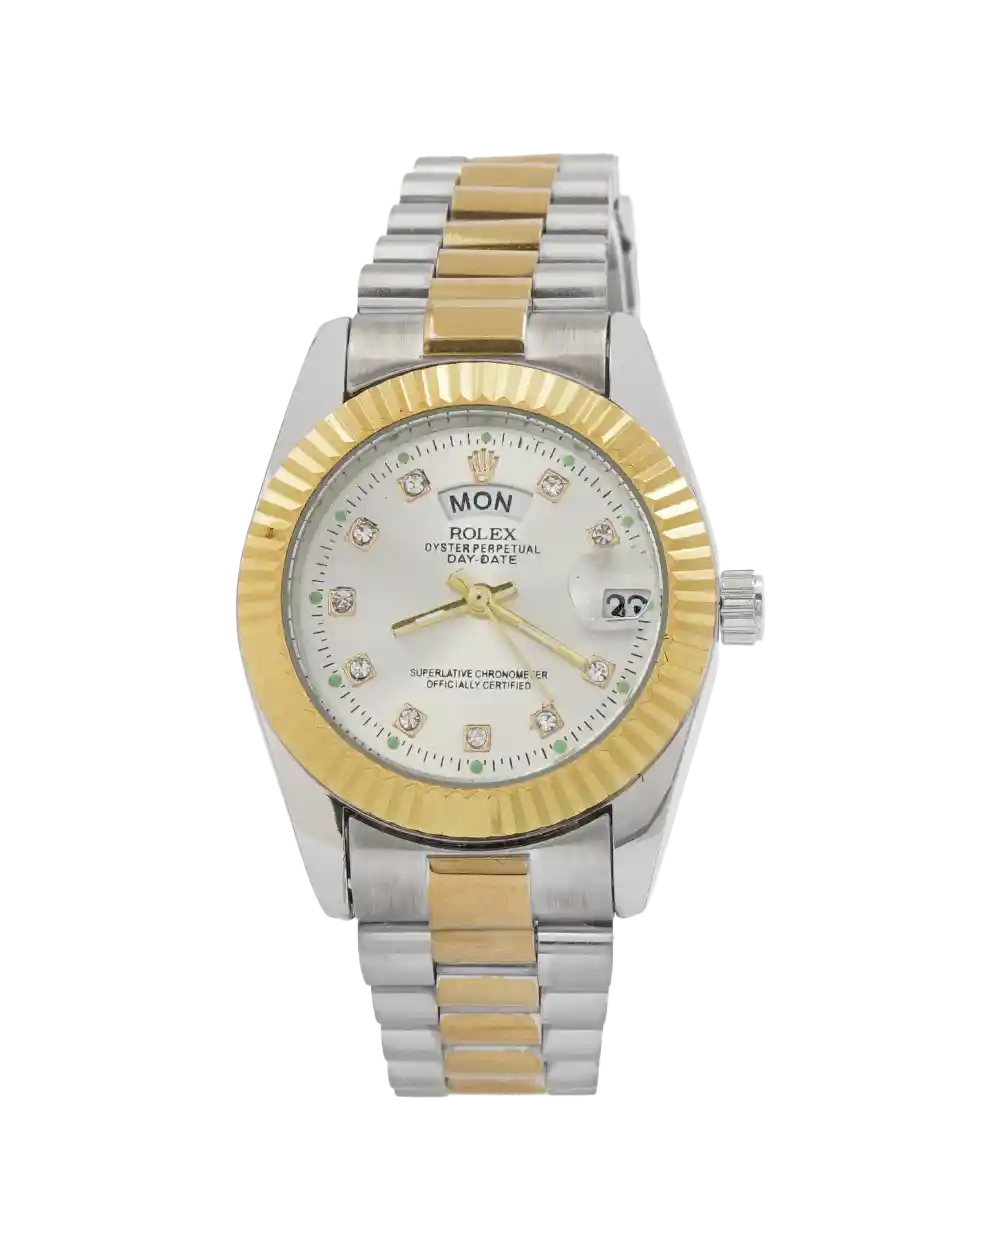 خرید ساعت مچی زنانه رولکس ROLEX طرح DAY DATE مدل 2057 رنگ نقره ای طلایی و صفحه سفید رنگ ثابت و تقویم ایام هفته بهترین قیمت و ارسال رایگان